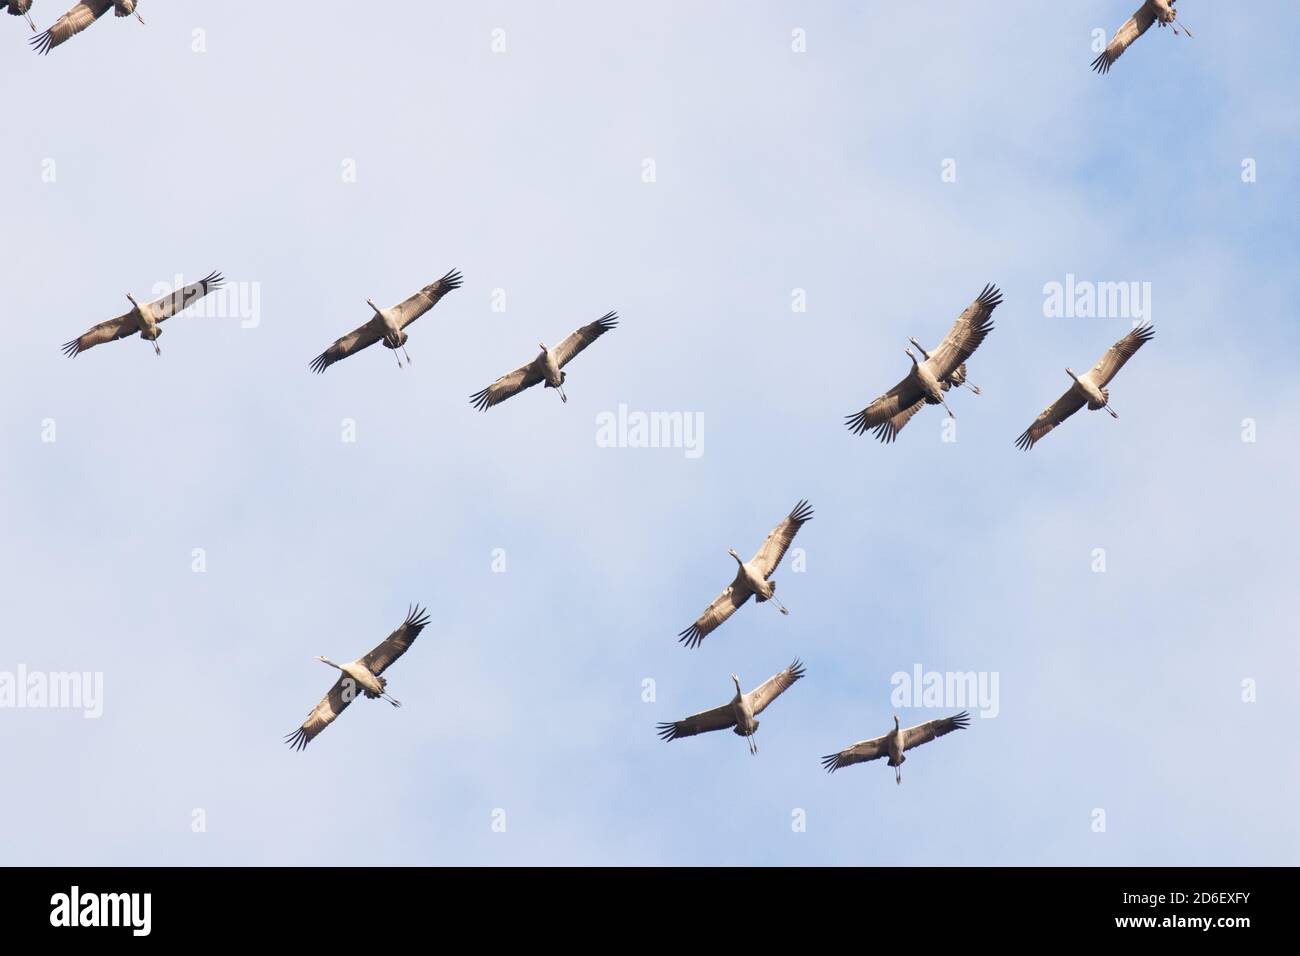 Un grand troupeau de grues communes, Grus grus, volant pendant la migration printanière dans la nature estonienne. Banque D'Images